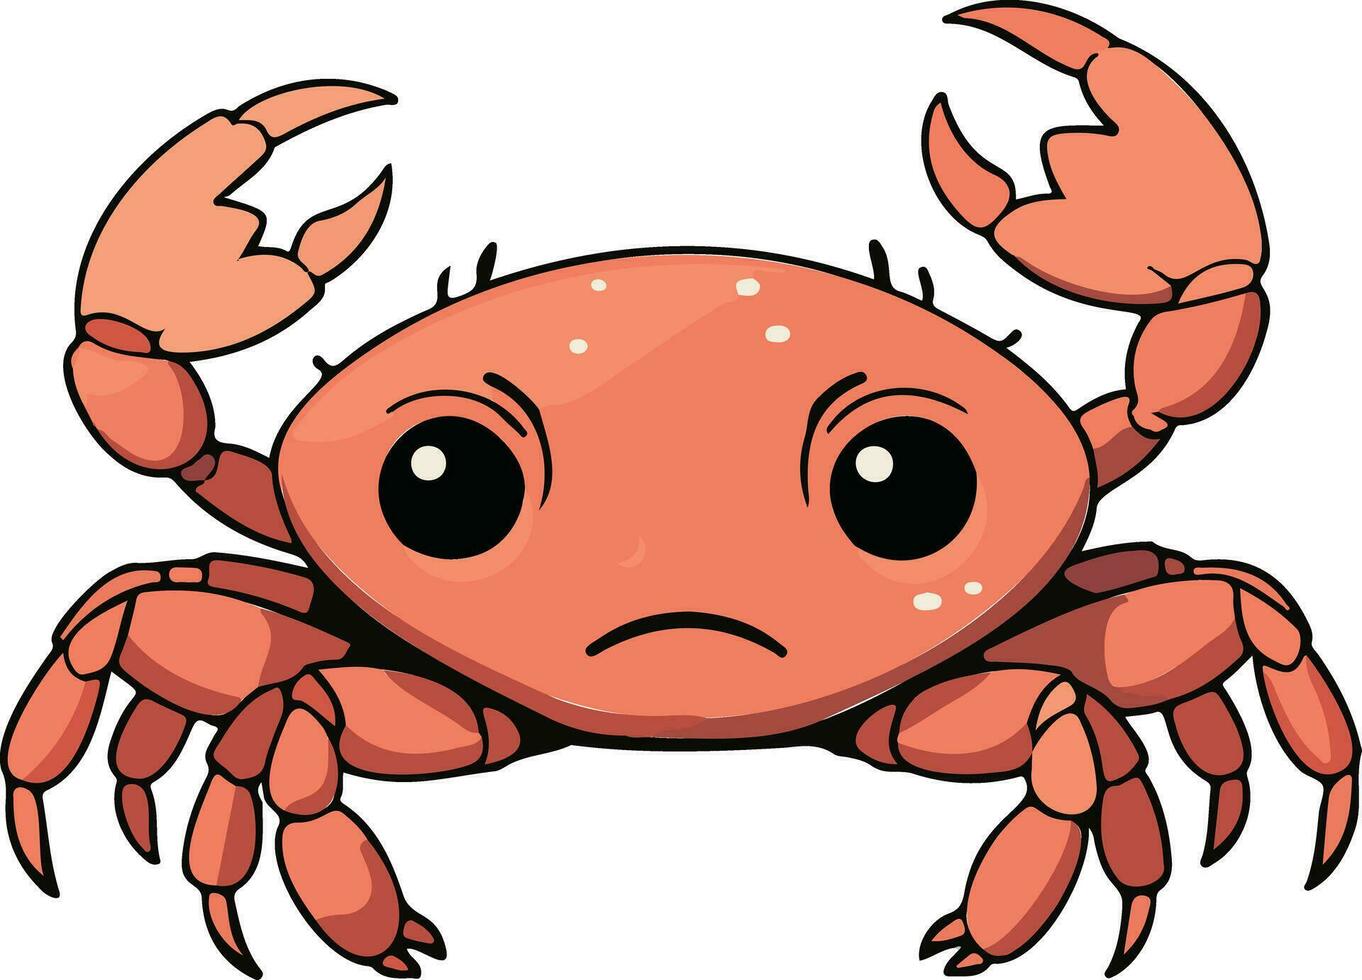 Crabe crustacé bande dessinée vecteur conception